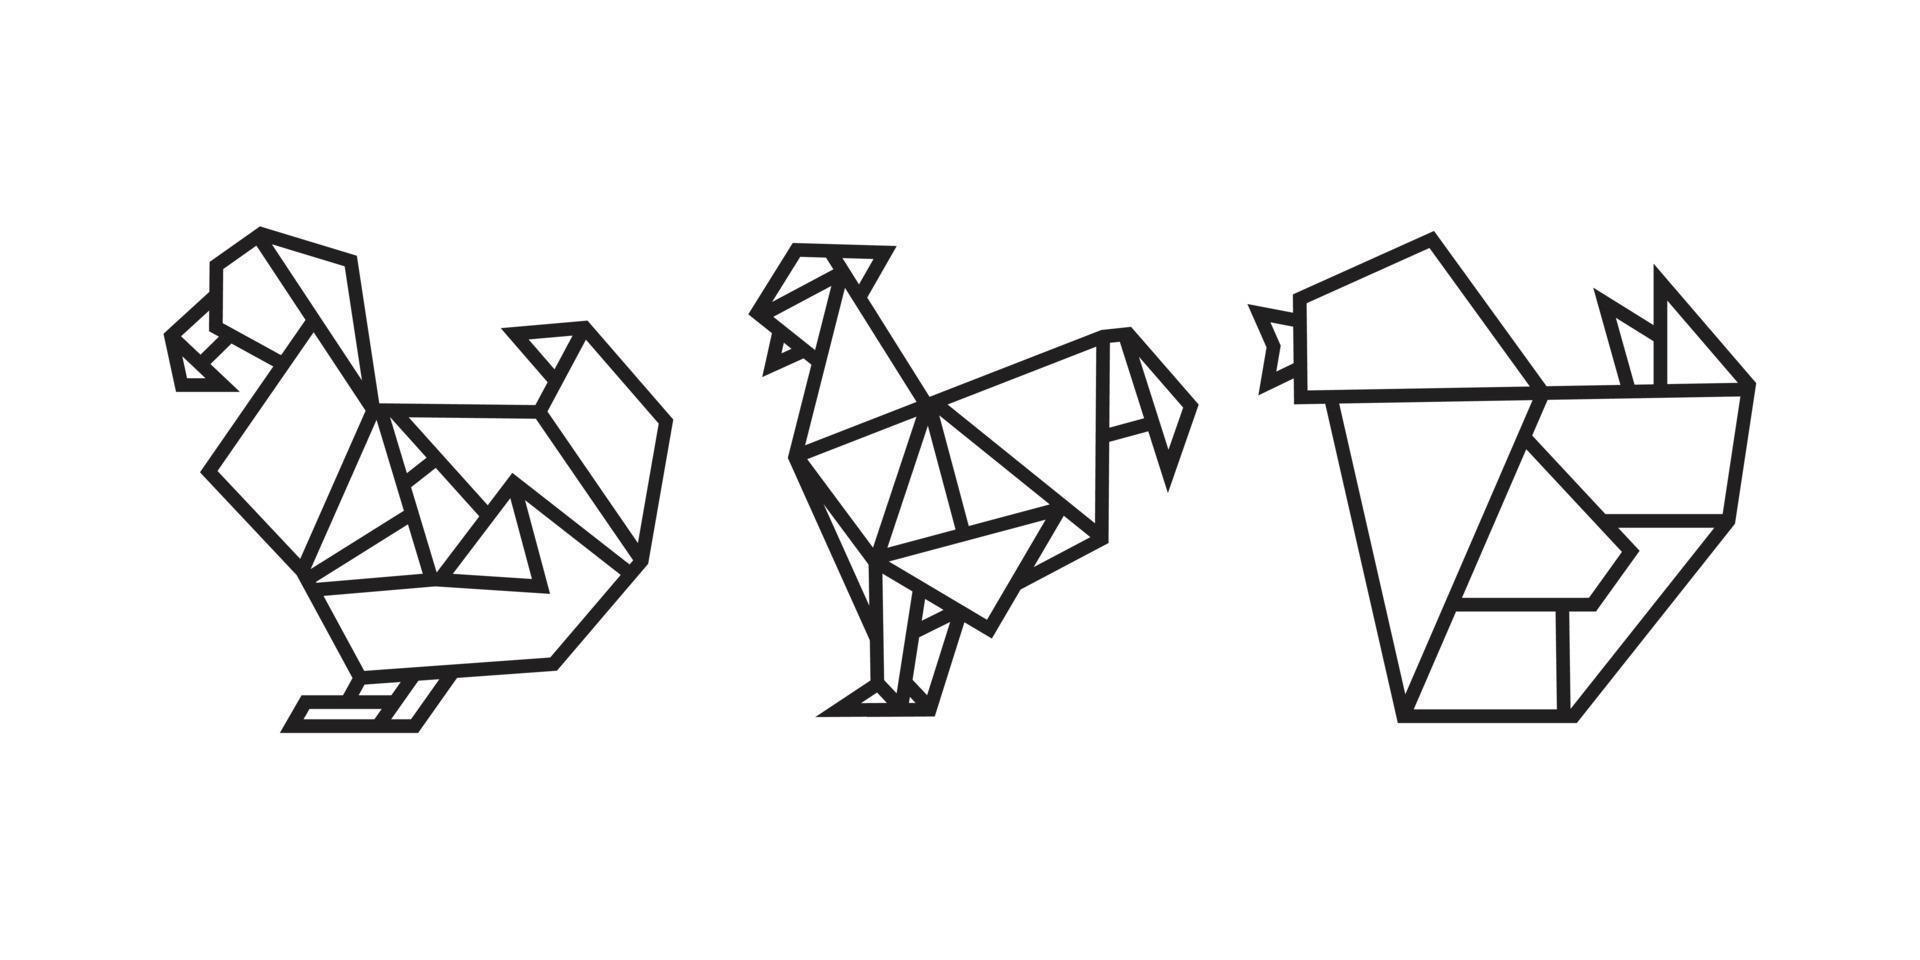 ilustrações de pássaros em estilo origami vetor